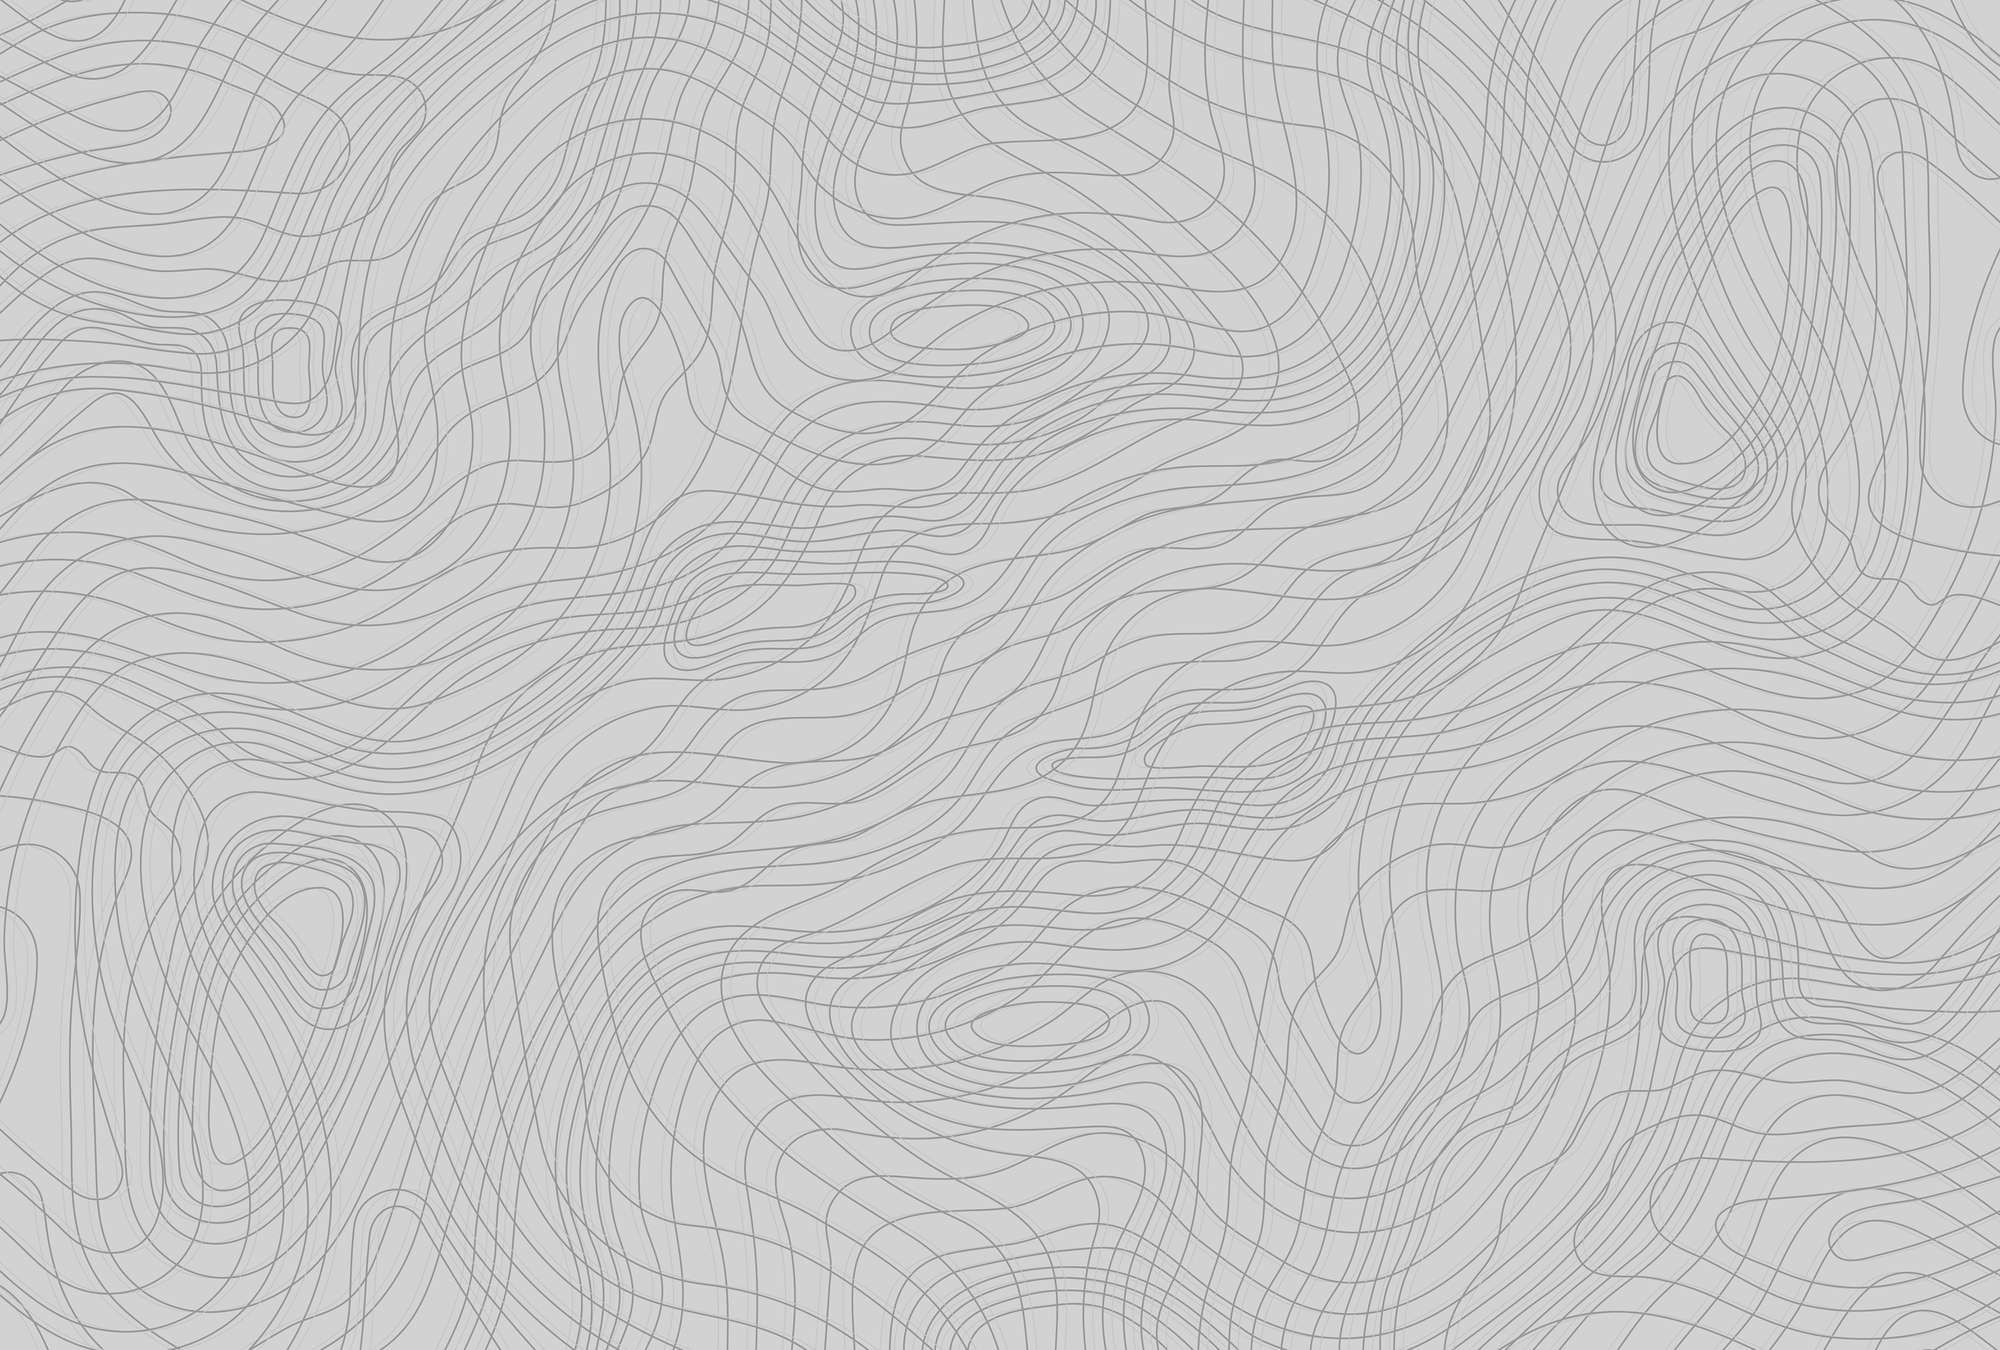             Fototapete Linienmuster, minimalistisch & organisch – Grau, Schwarz
        